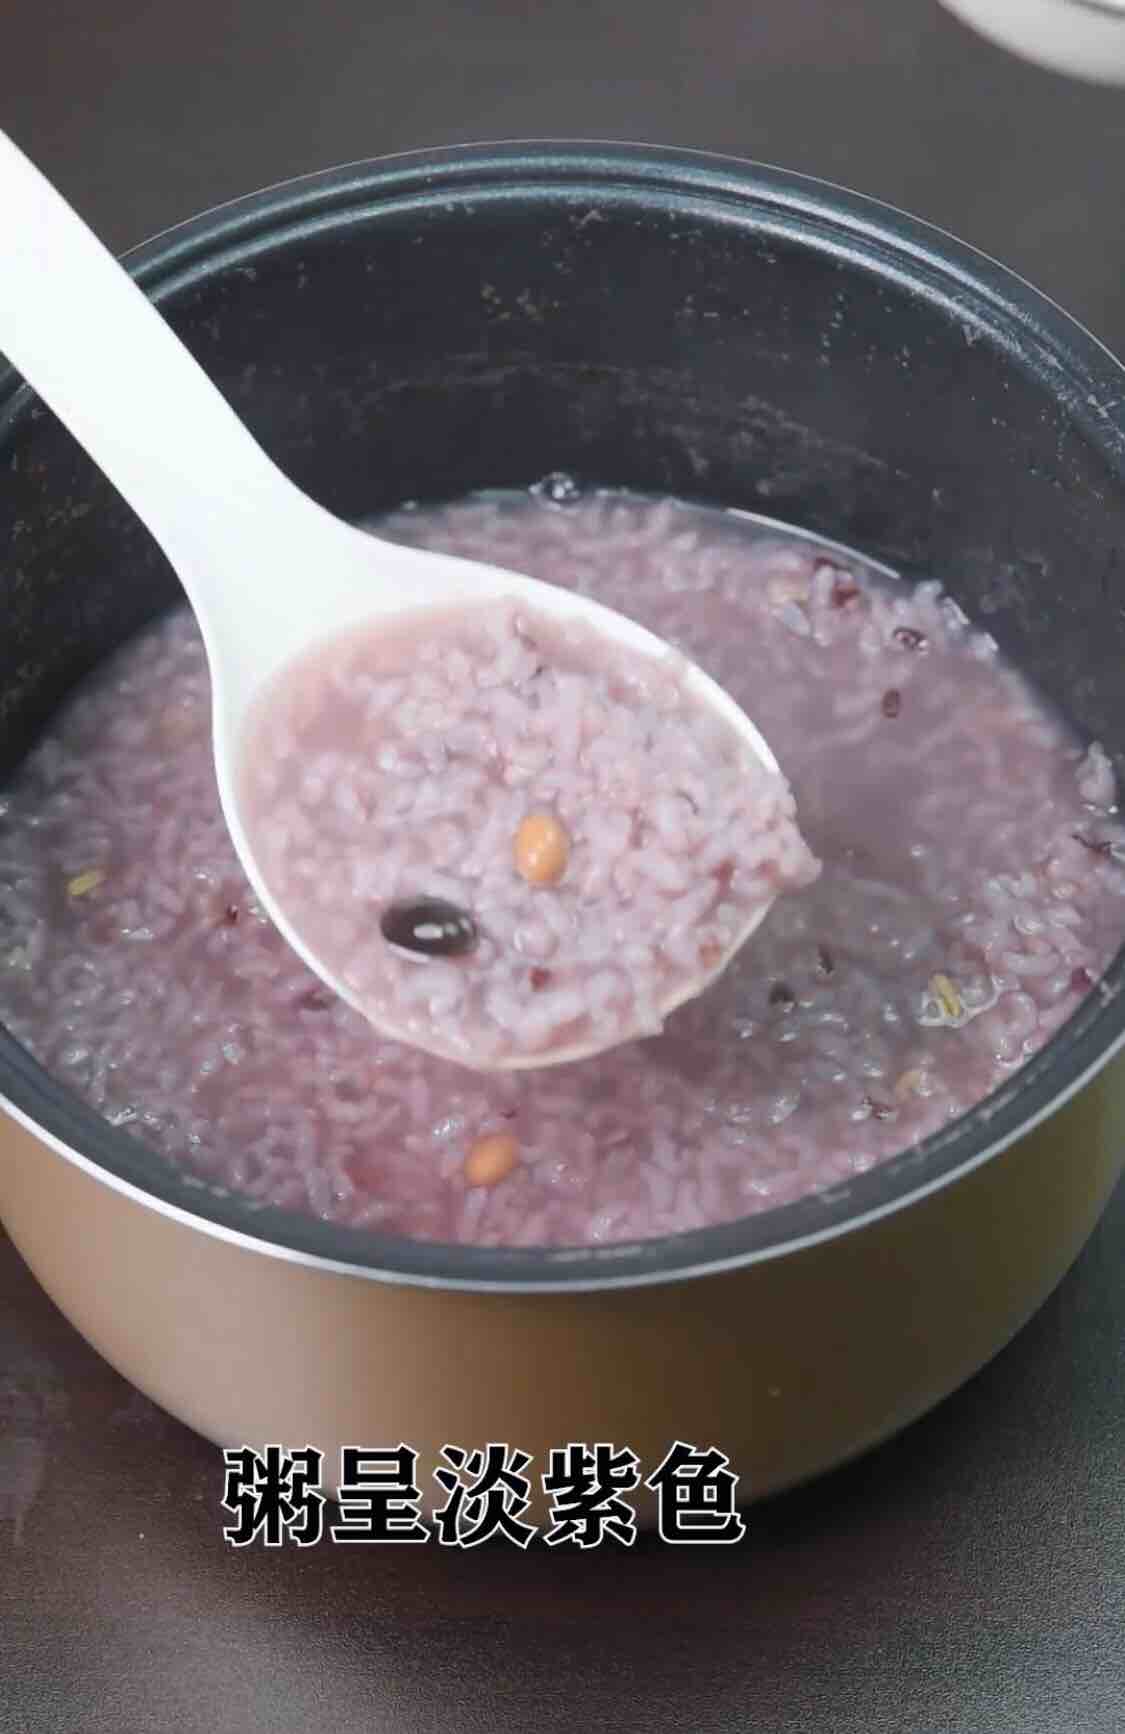 Honey Multi-grain Rice Porridge recipe